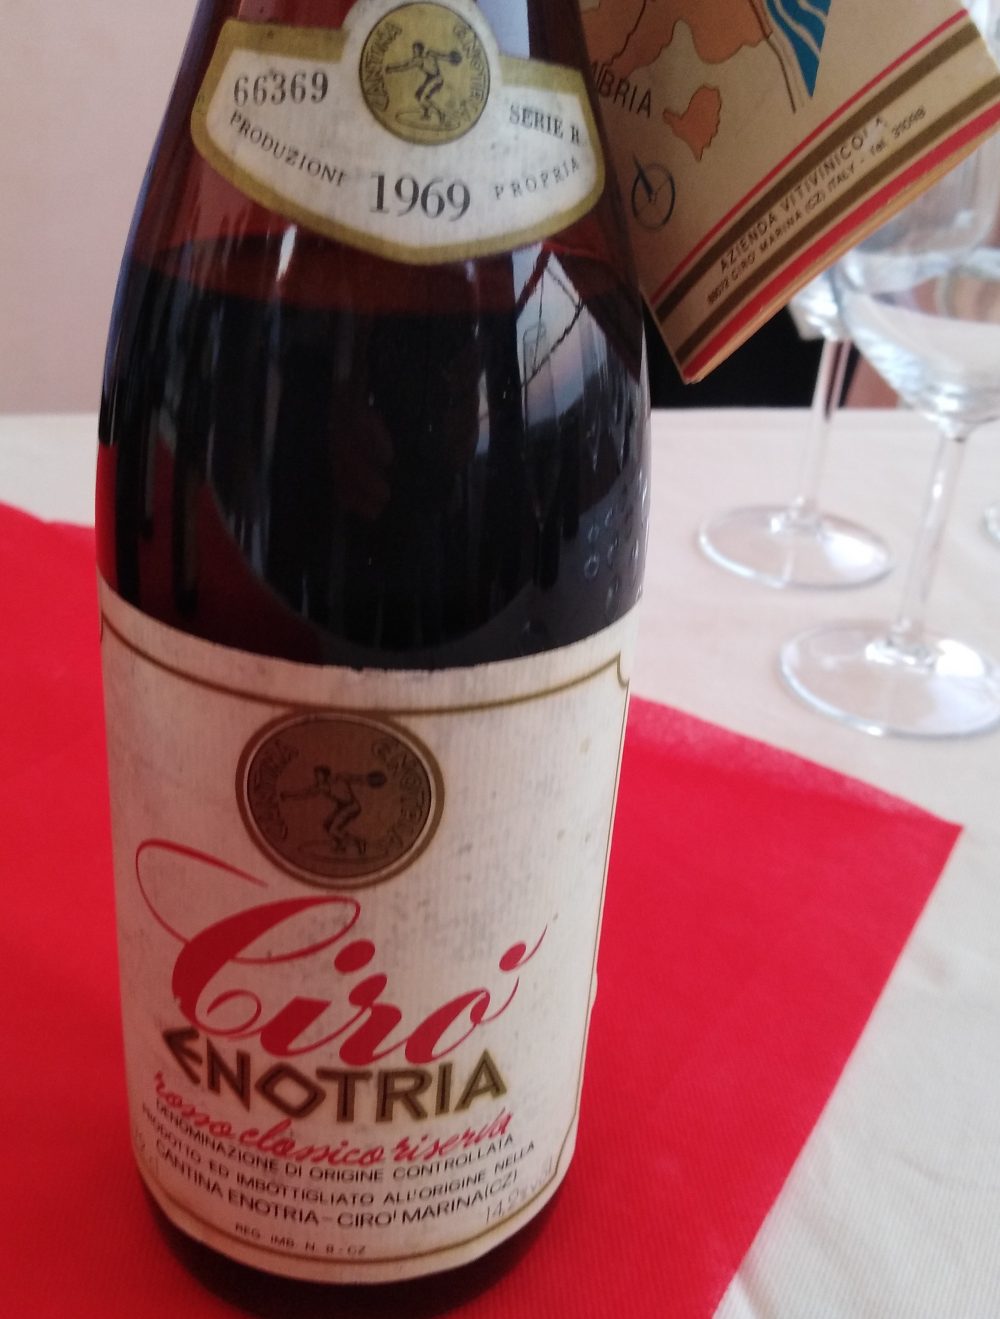 Bottiglia di Ciro' Rosso 1969 dell'azienda Enotria